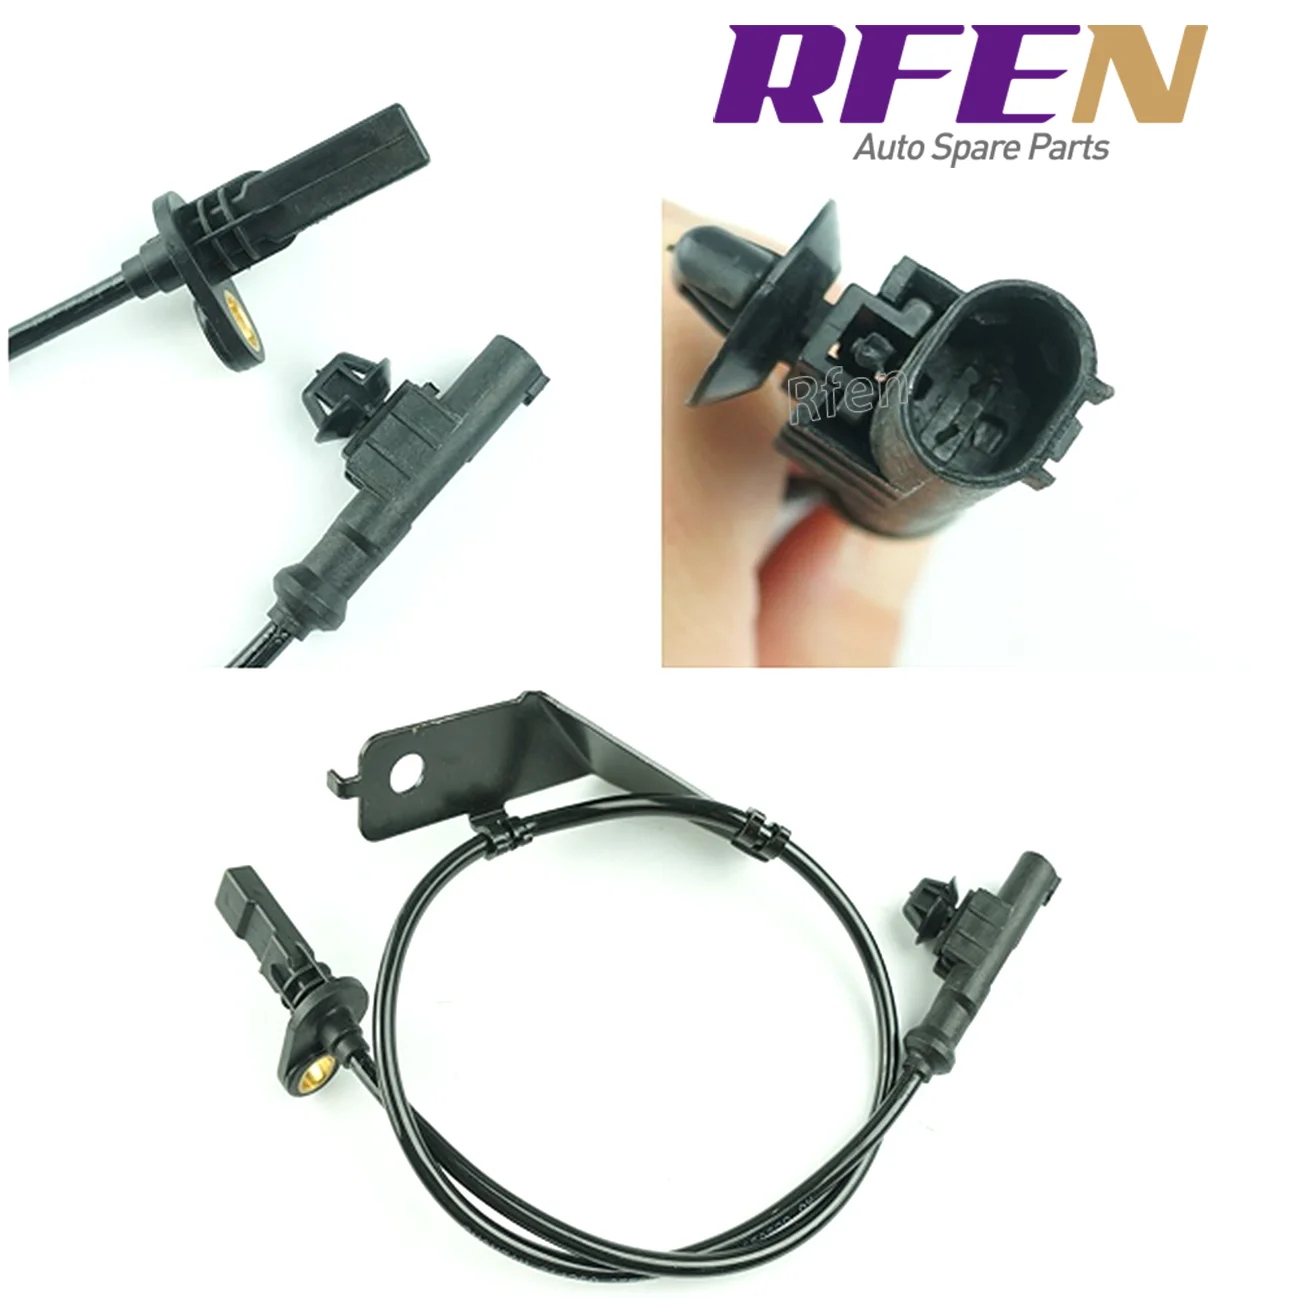 

3550060-BC01 Rfen automobile sensor ABS sensor for M70/M90